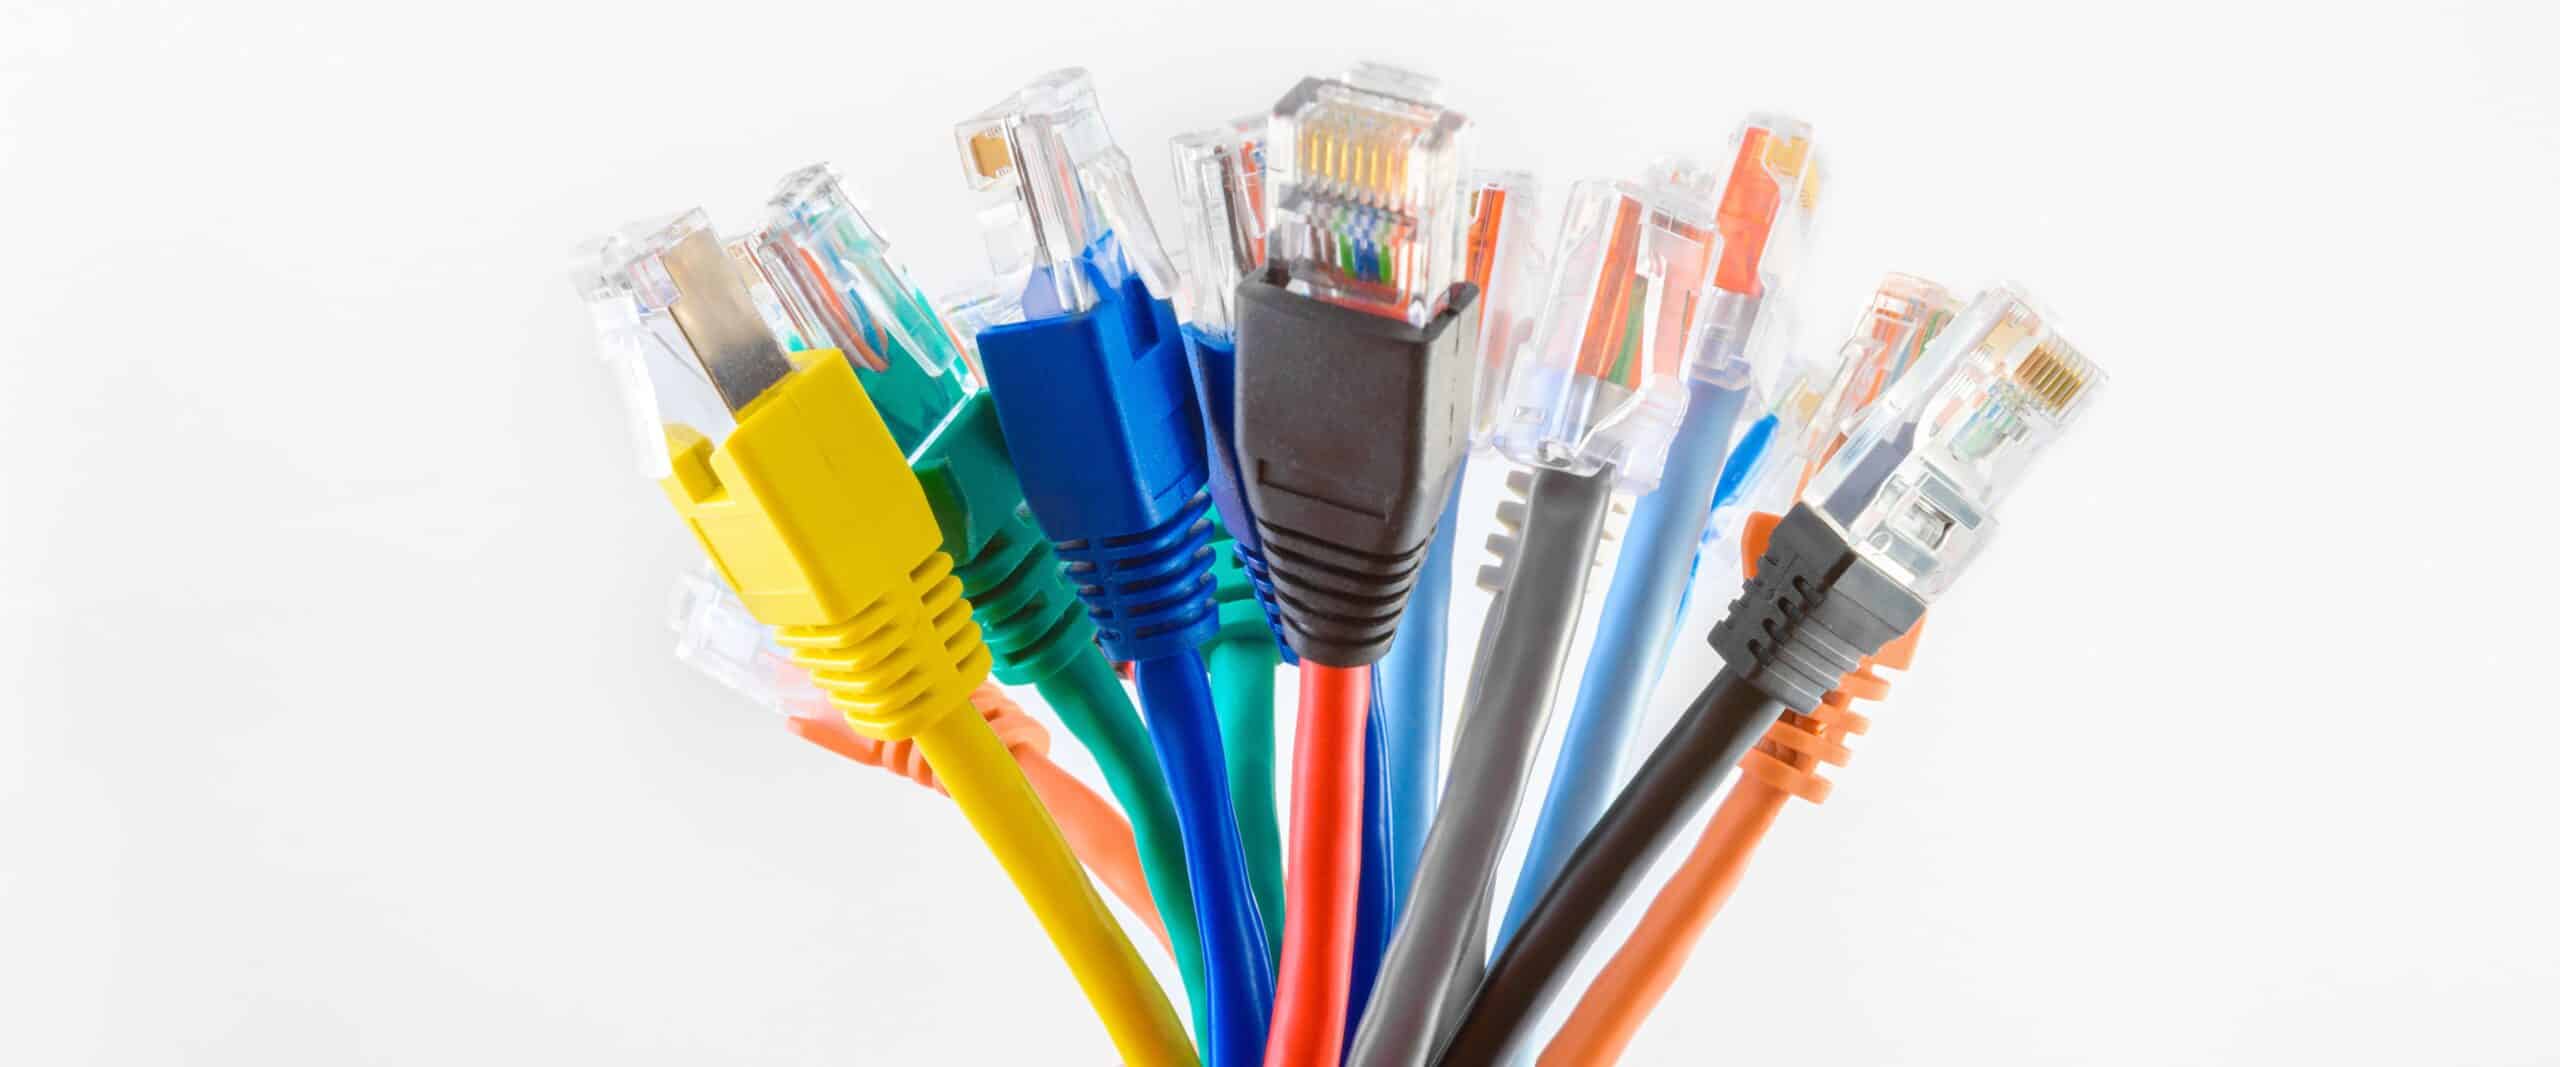 Tudo Sobre Cabos Ethernet: A Escolha Certa para Sua Rede, by Lojapm